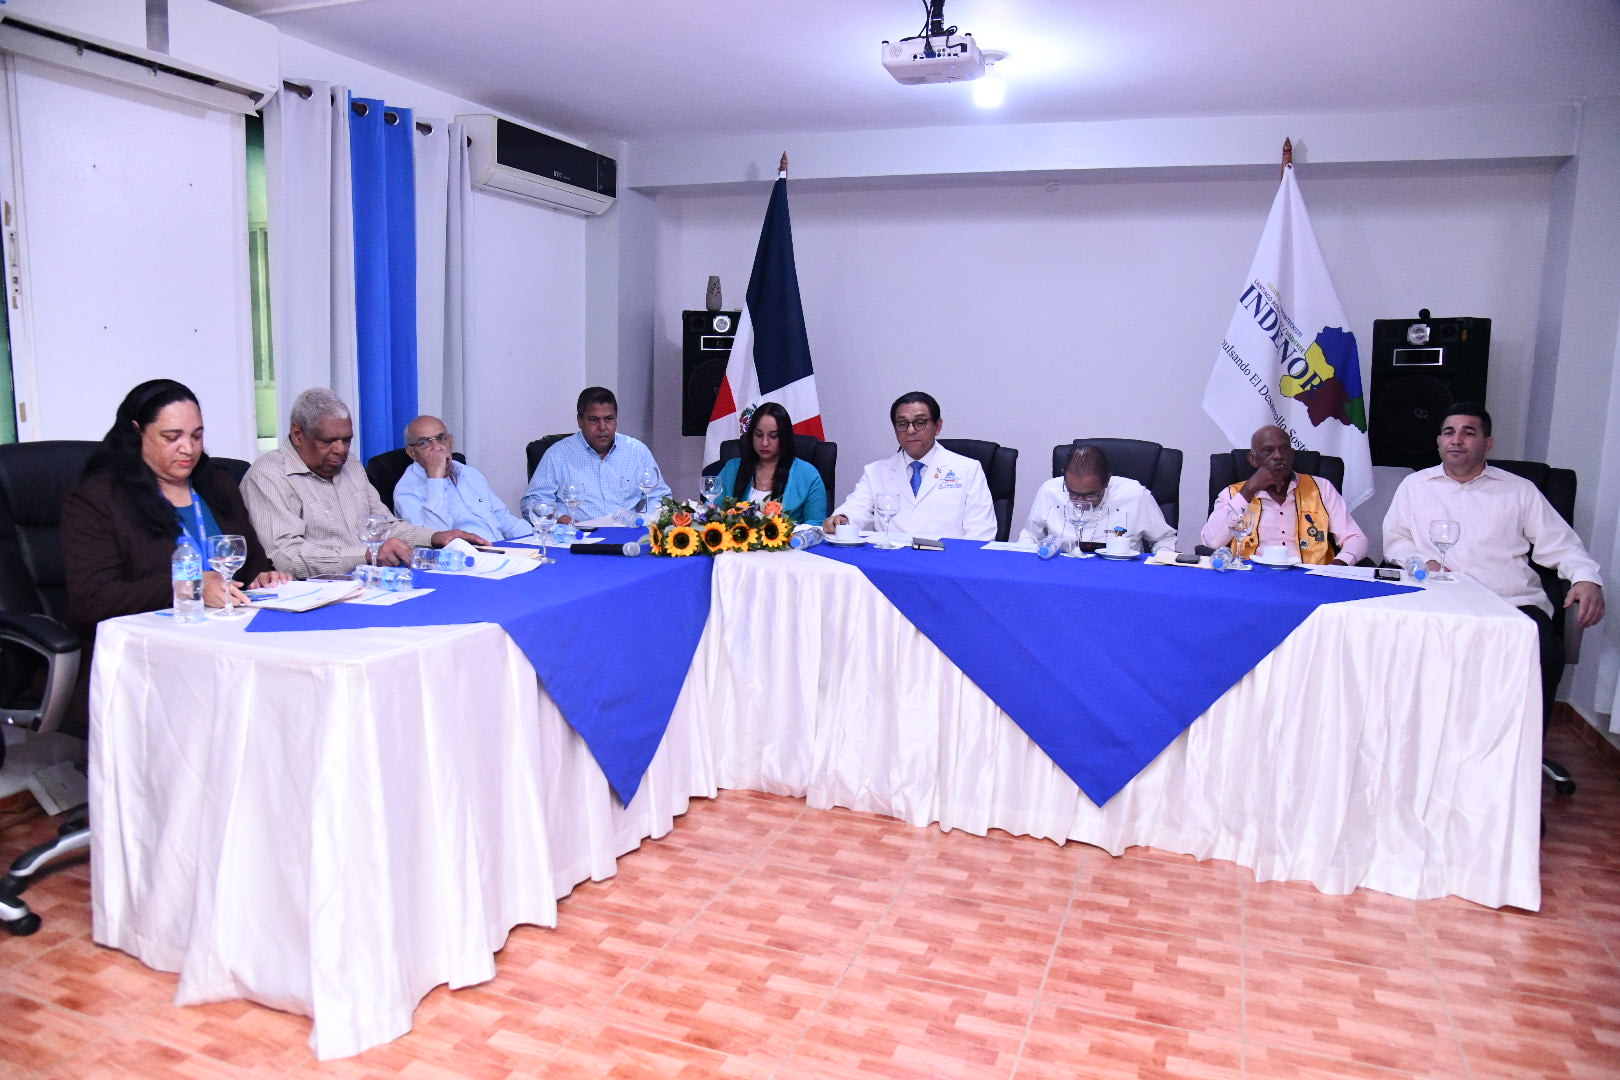 REPÚBLICA DOMINICANA: Ministro de Salud realiza encuentro en Mao, Valderde, a fin de resolver problemáticas de la sector salud